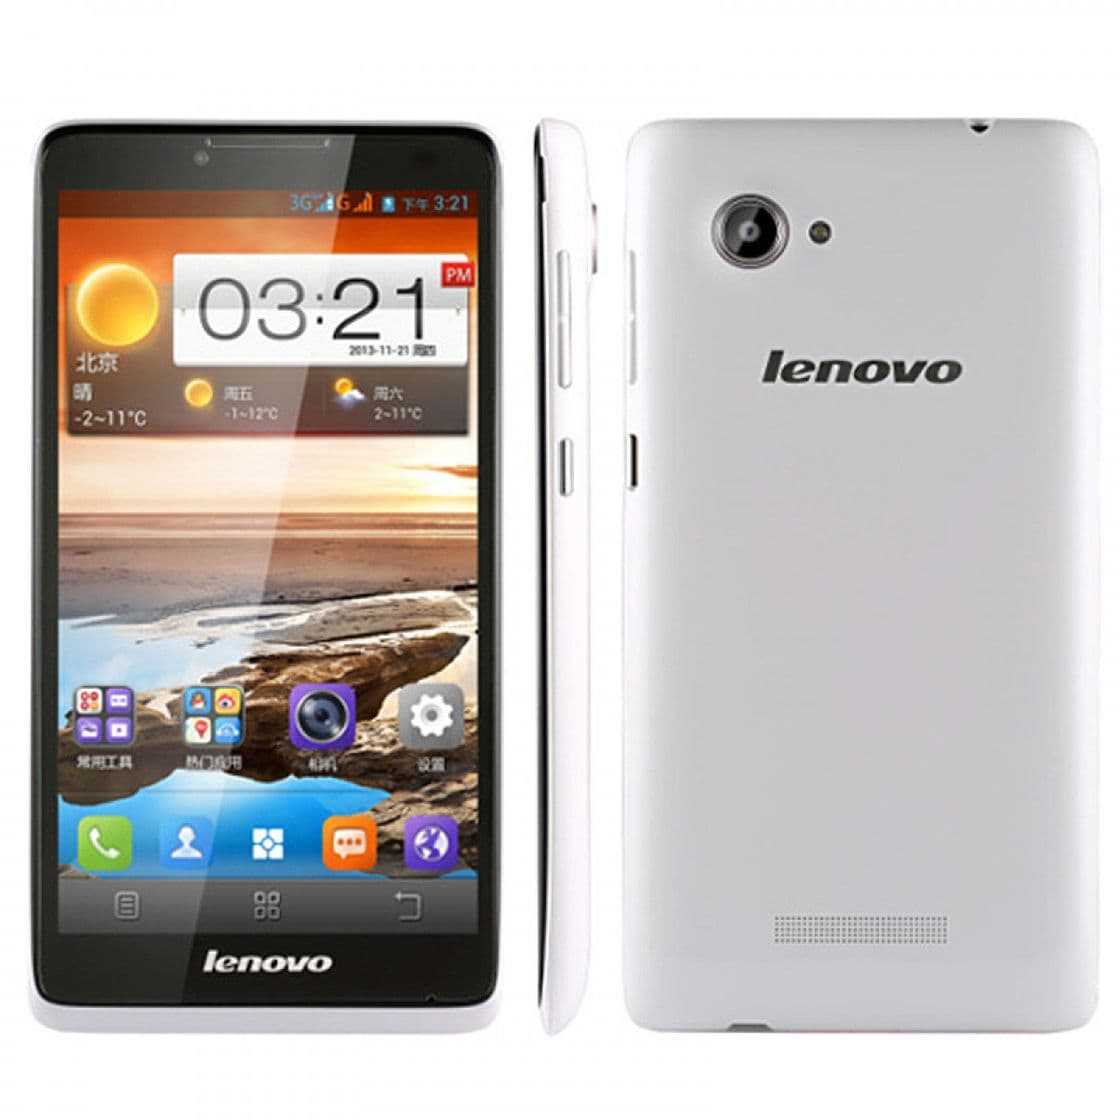 Lenovo a766 (белый) - купить  в донецк, скидки, цена, отзывы, обзор, характеристики - мобильные телефоны